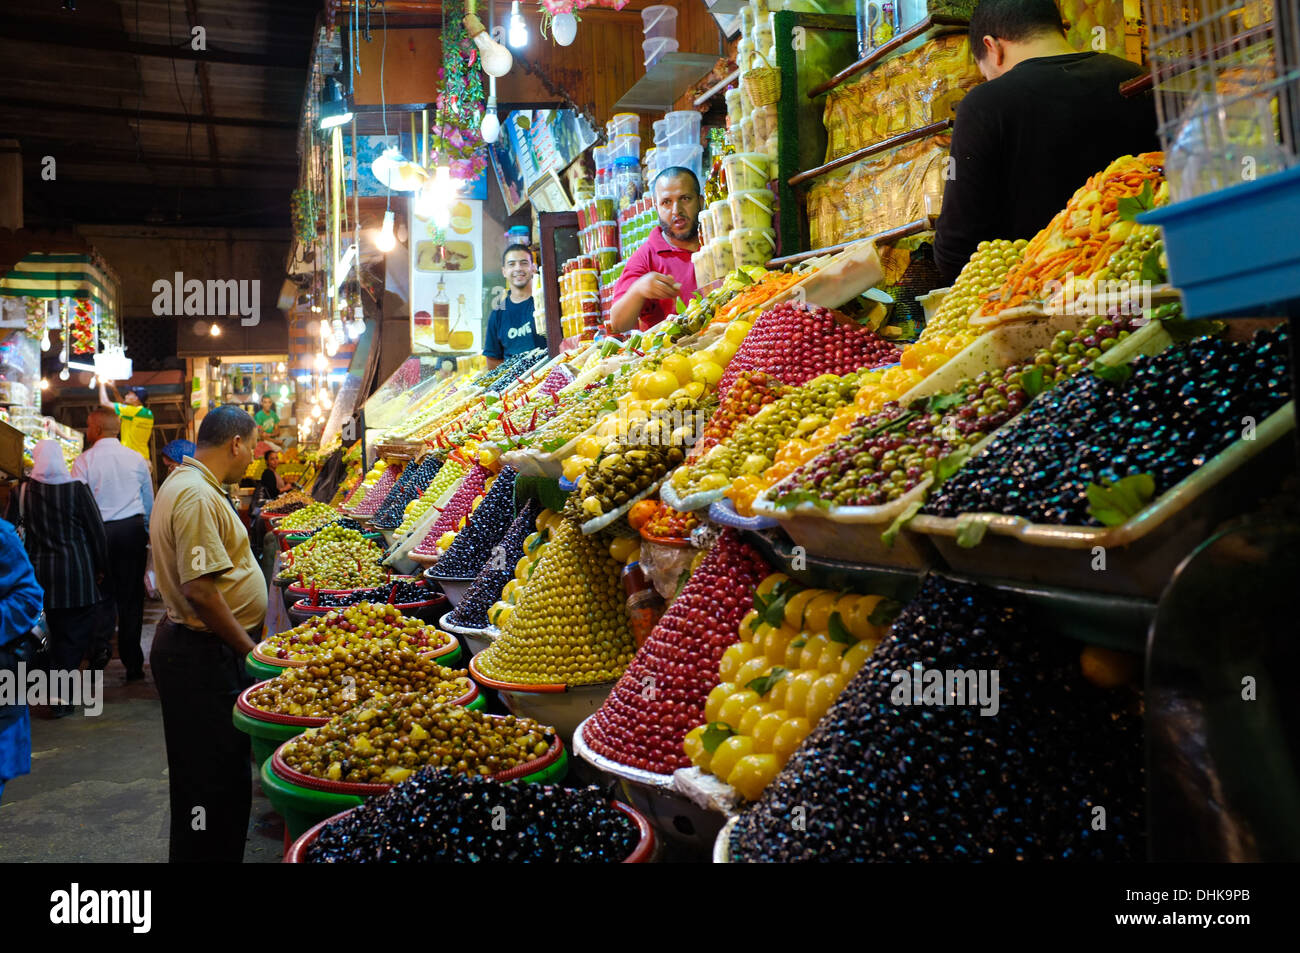 Weiten Blick der Käufer auf eine Olive Markt drinnen in Meknes Mororcco Stockfoto